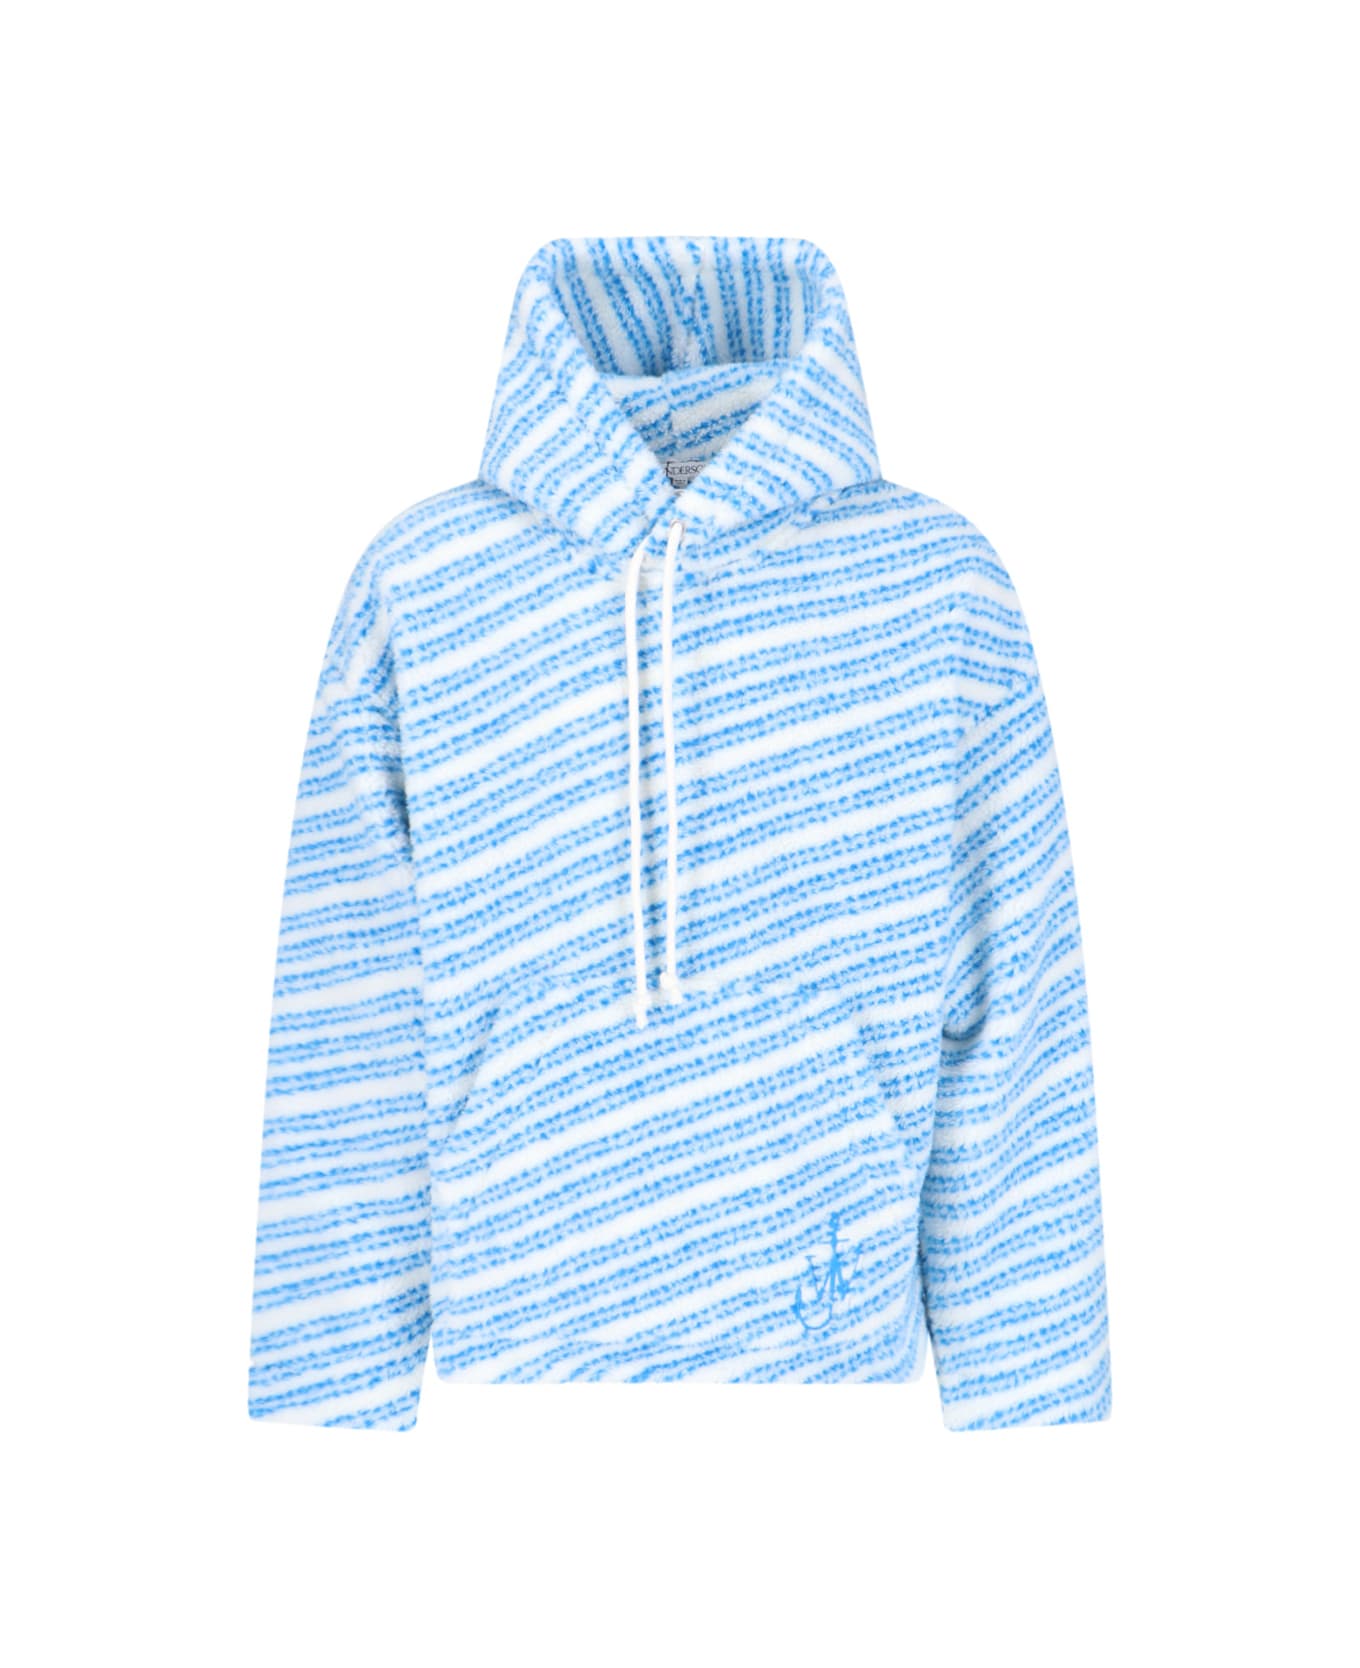 J.W. Anderson Striped Sweatshirt - Light Blue